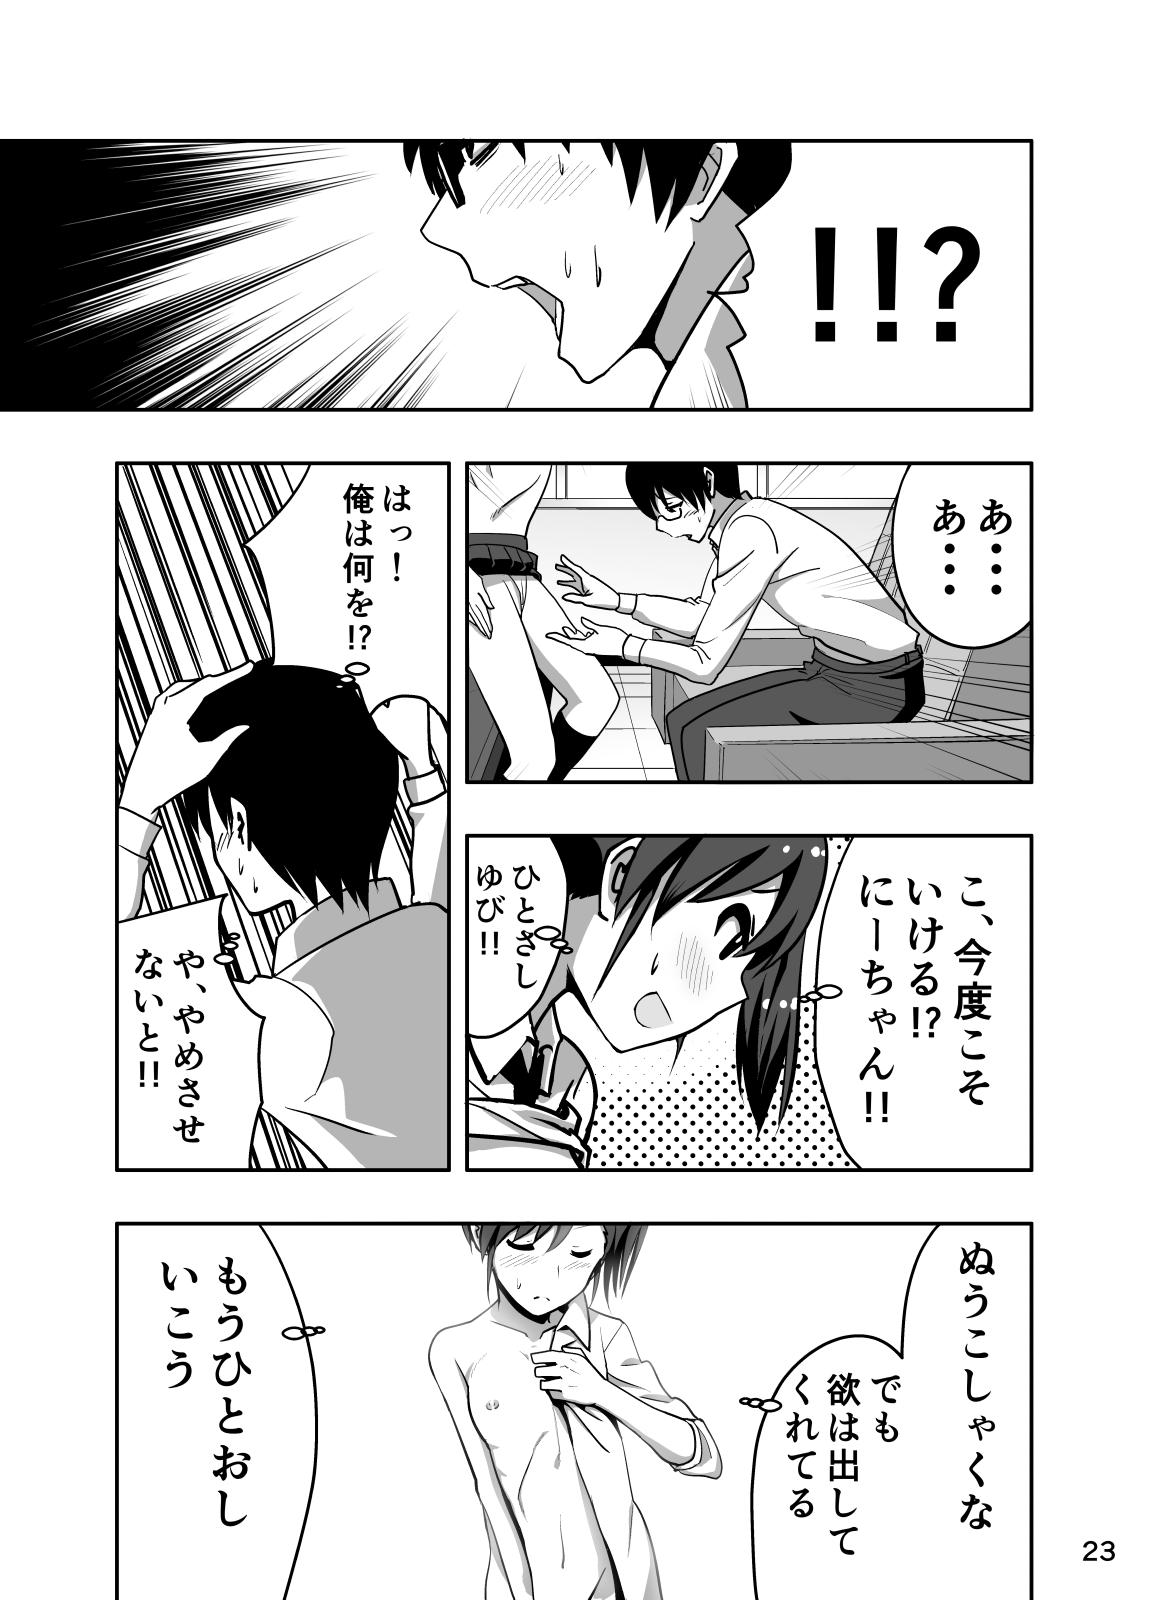 Mami Manga 3 22